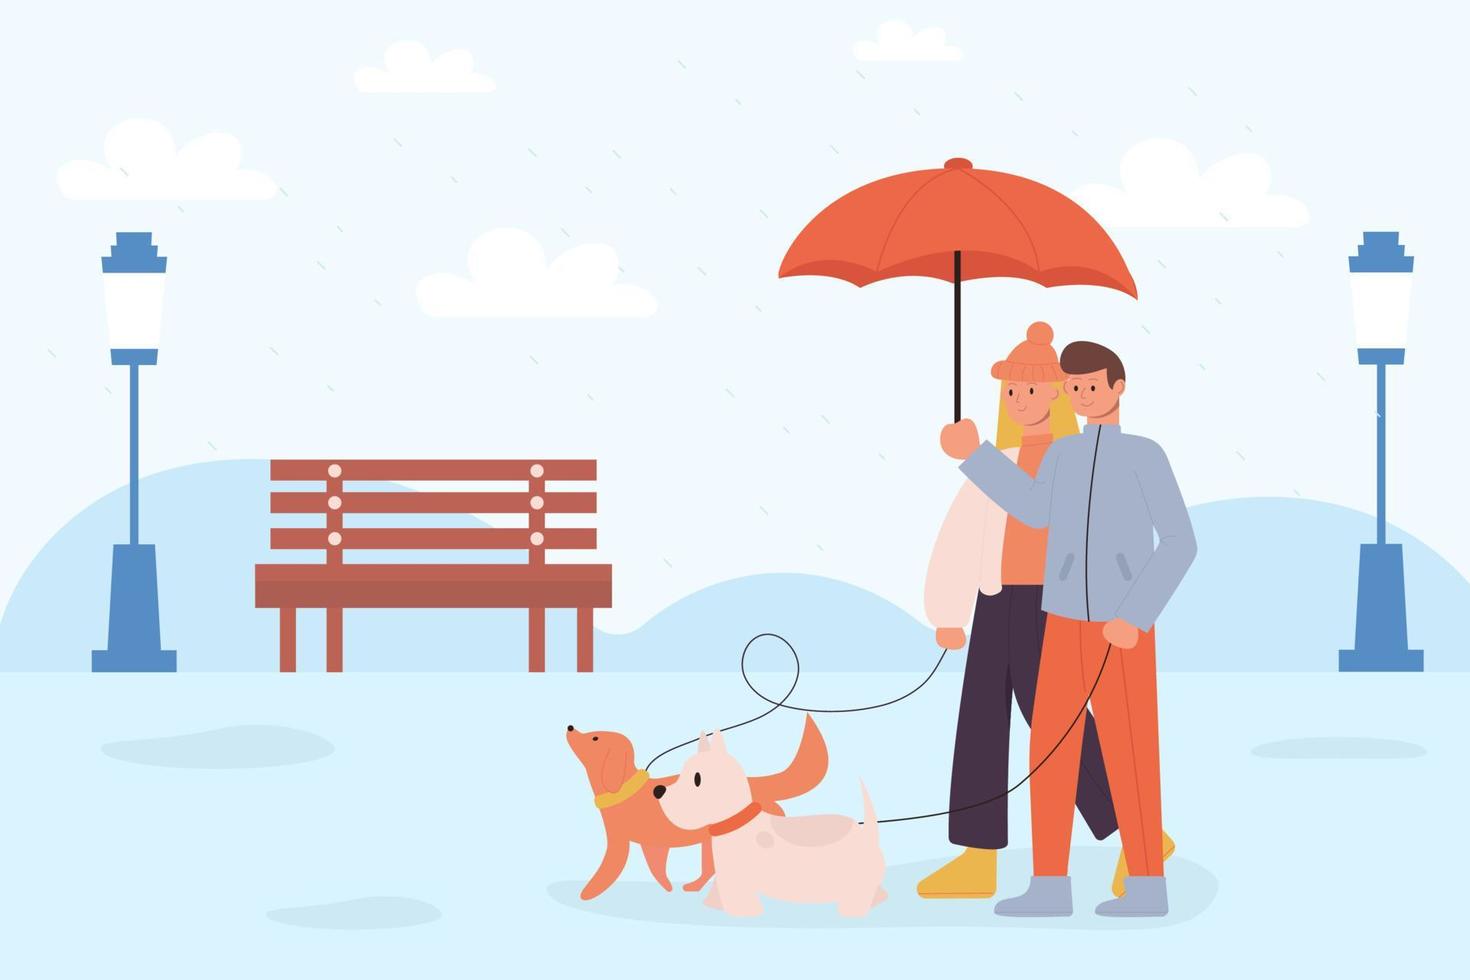 mois de promenade de chien. une femme et un homme promenant un chien en hiver dans la neige ou la pluie. vecteur